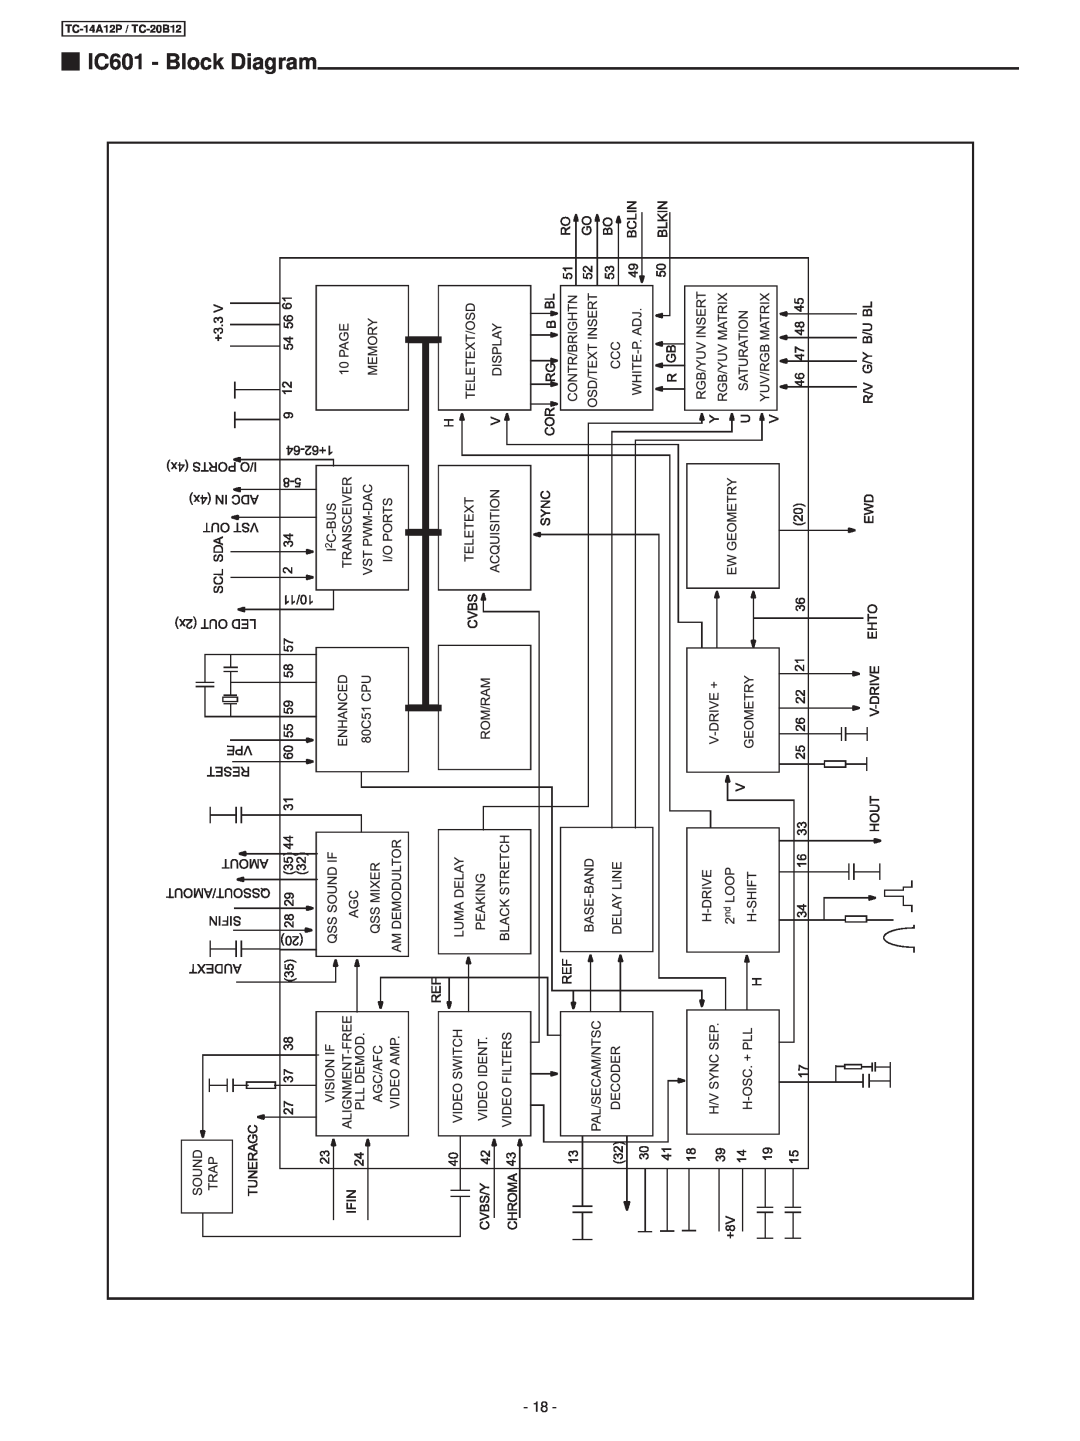 Panasonic service manual IC601 - Block Diagram, TC-14A12P / TC-20B12 